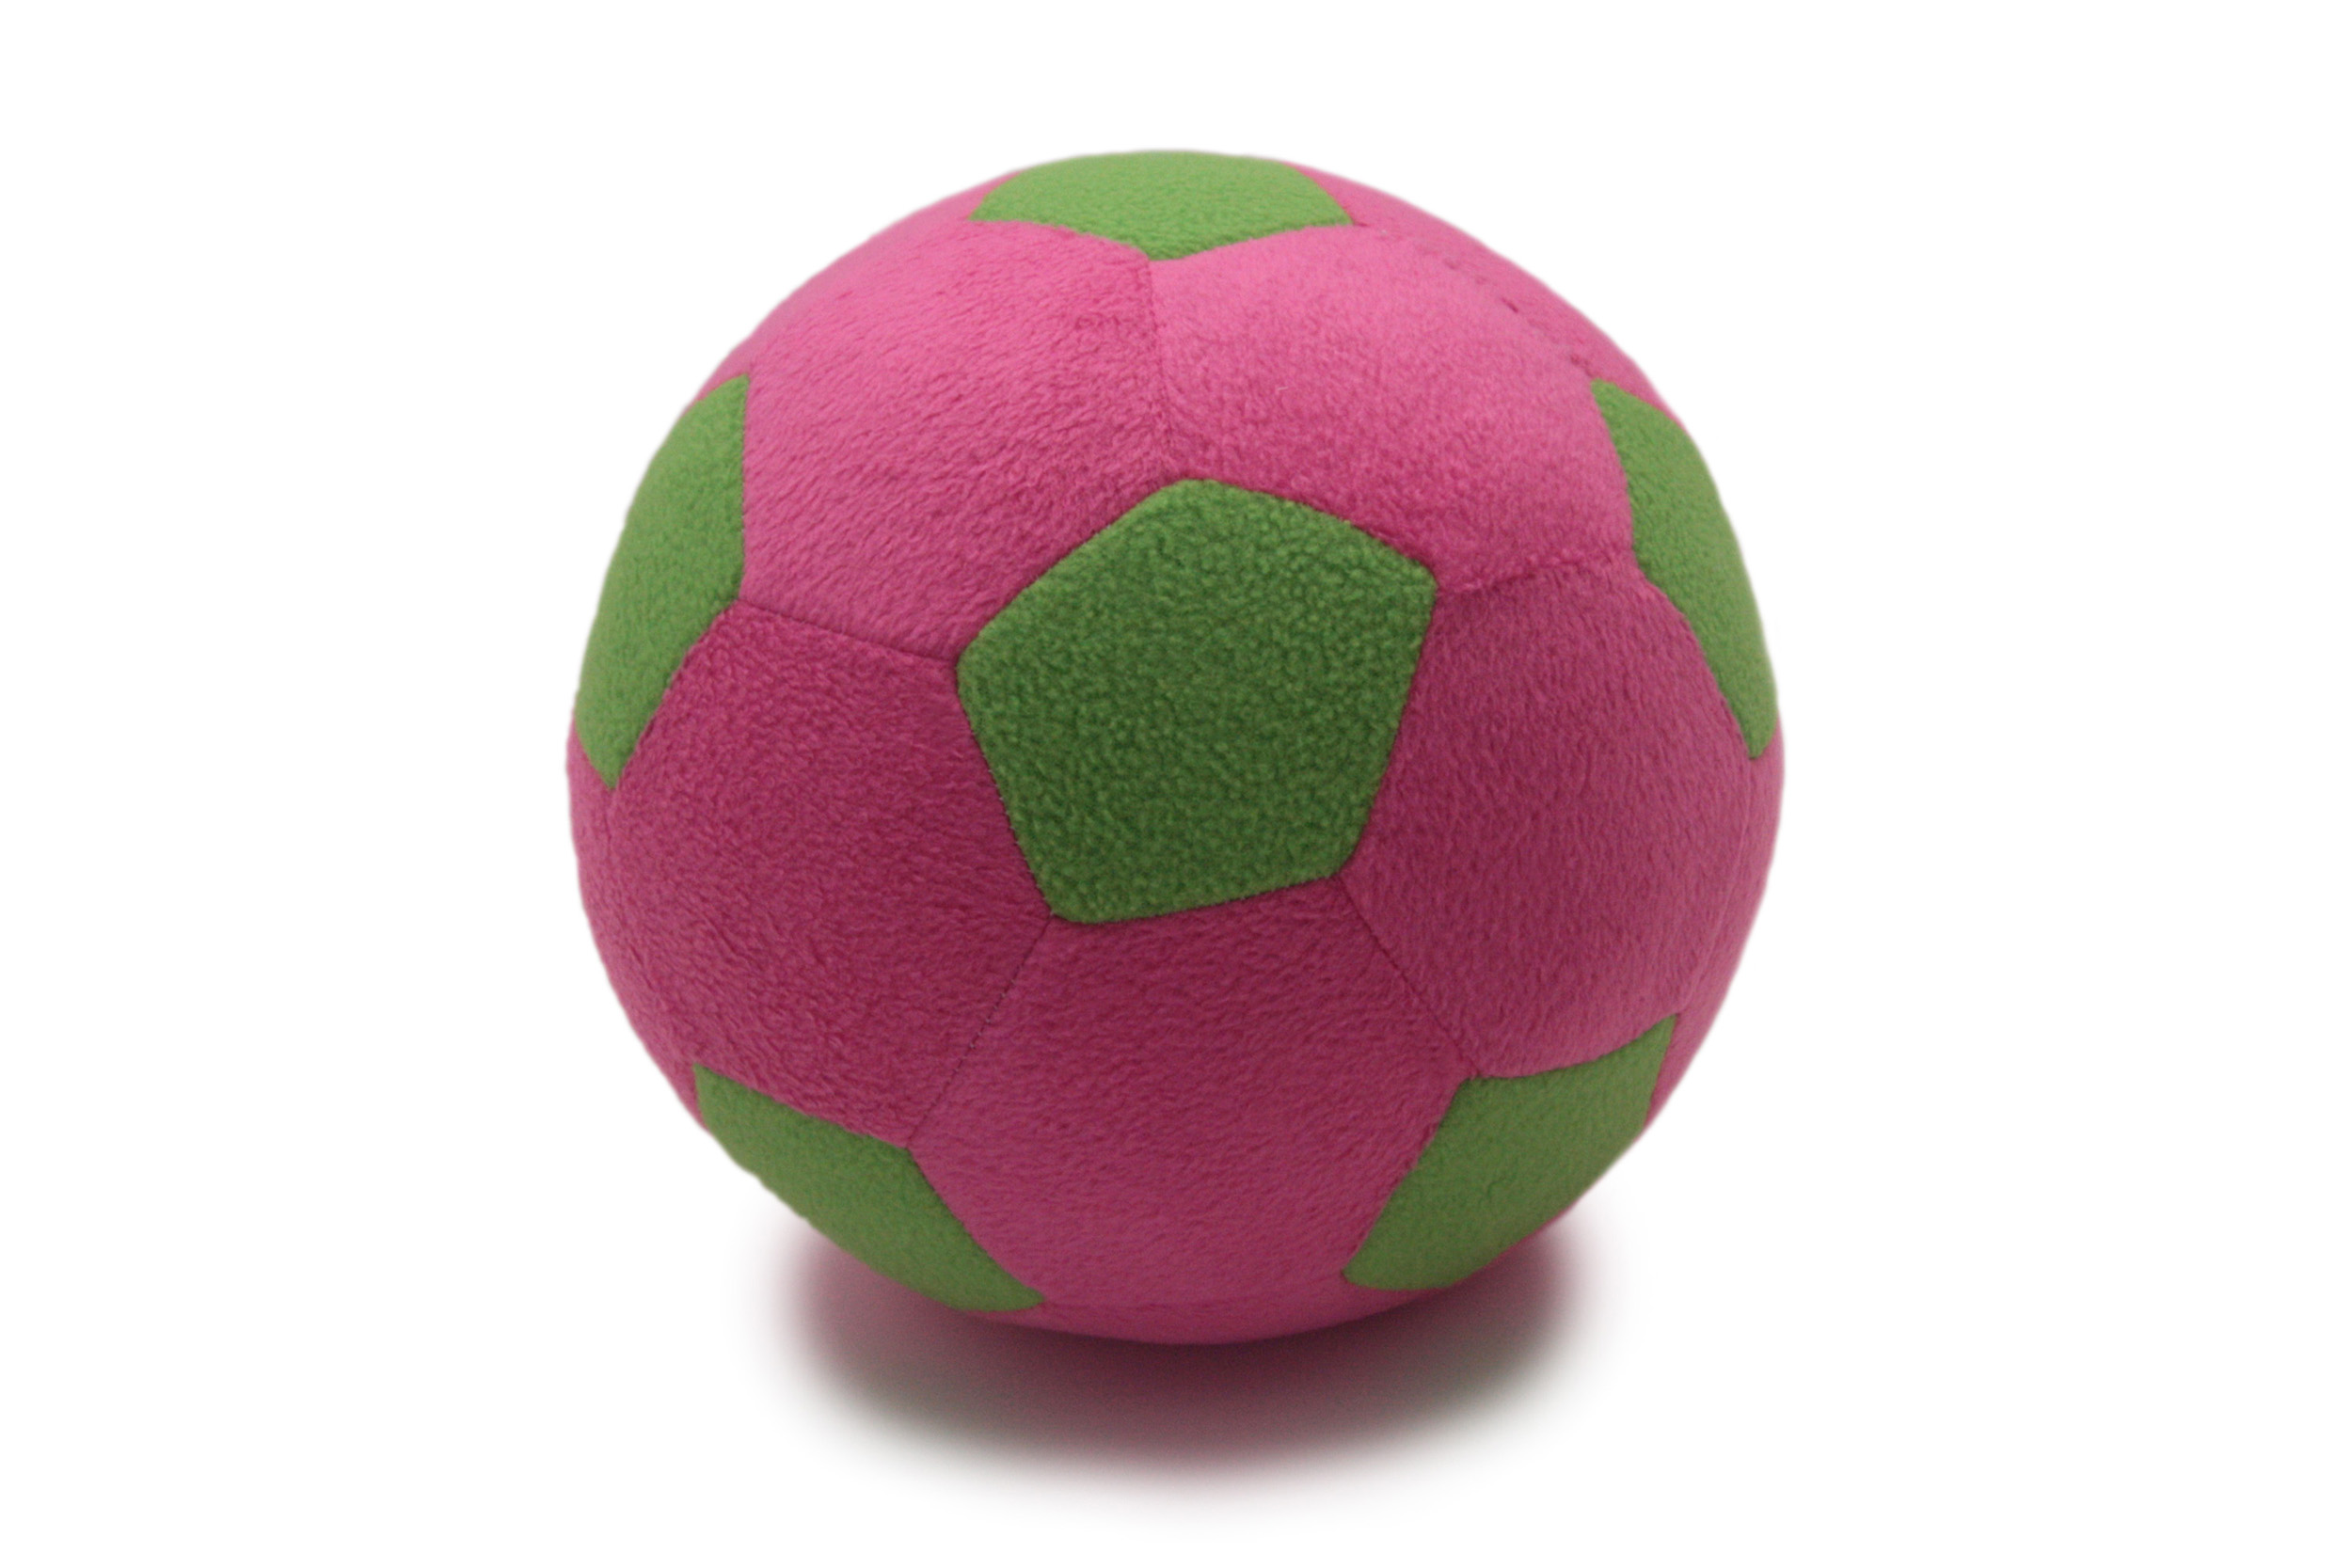 Детский мяч Magic Bear Toys F-100/PLG Мяч мягкий цвет розовый,светло-зеленый 23 см детский мяч magic bear toys f 100 wr мяч мягкий бело красный 23 см